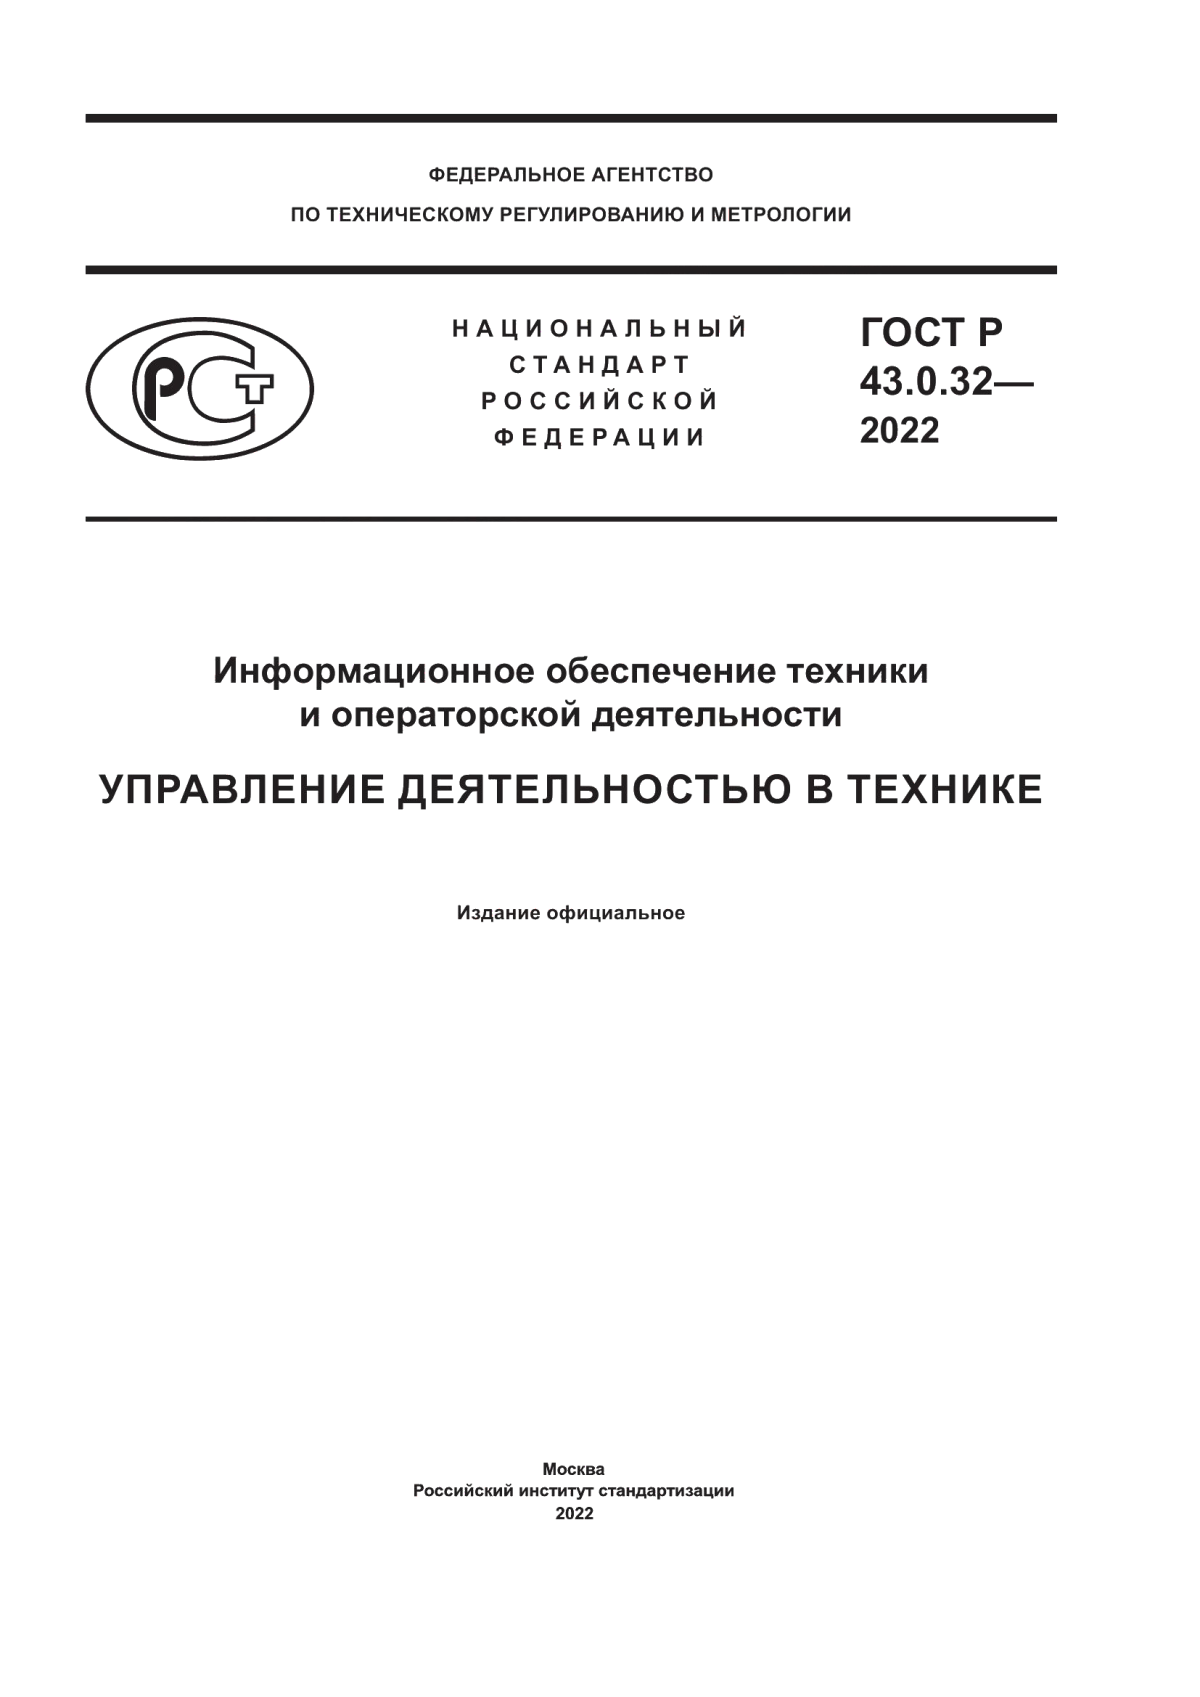 ГОСТ Р 43.0.32-2022 Информационное обеспечение техники и операторской деятельности. Управление деятельностью в технике